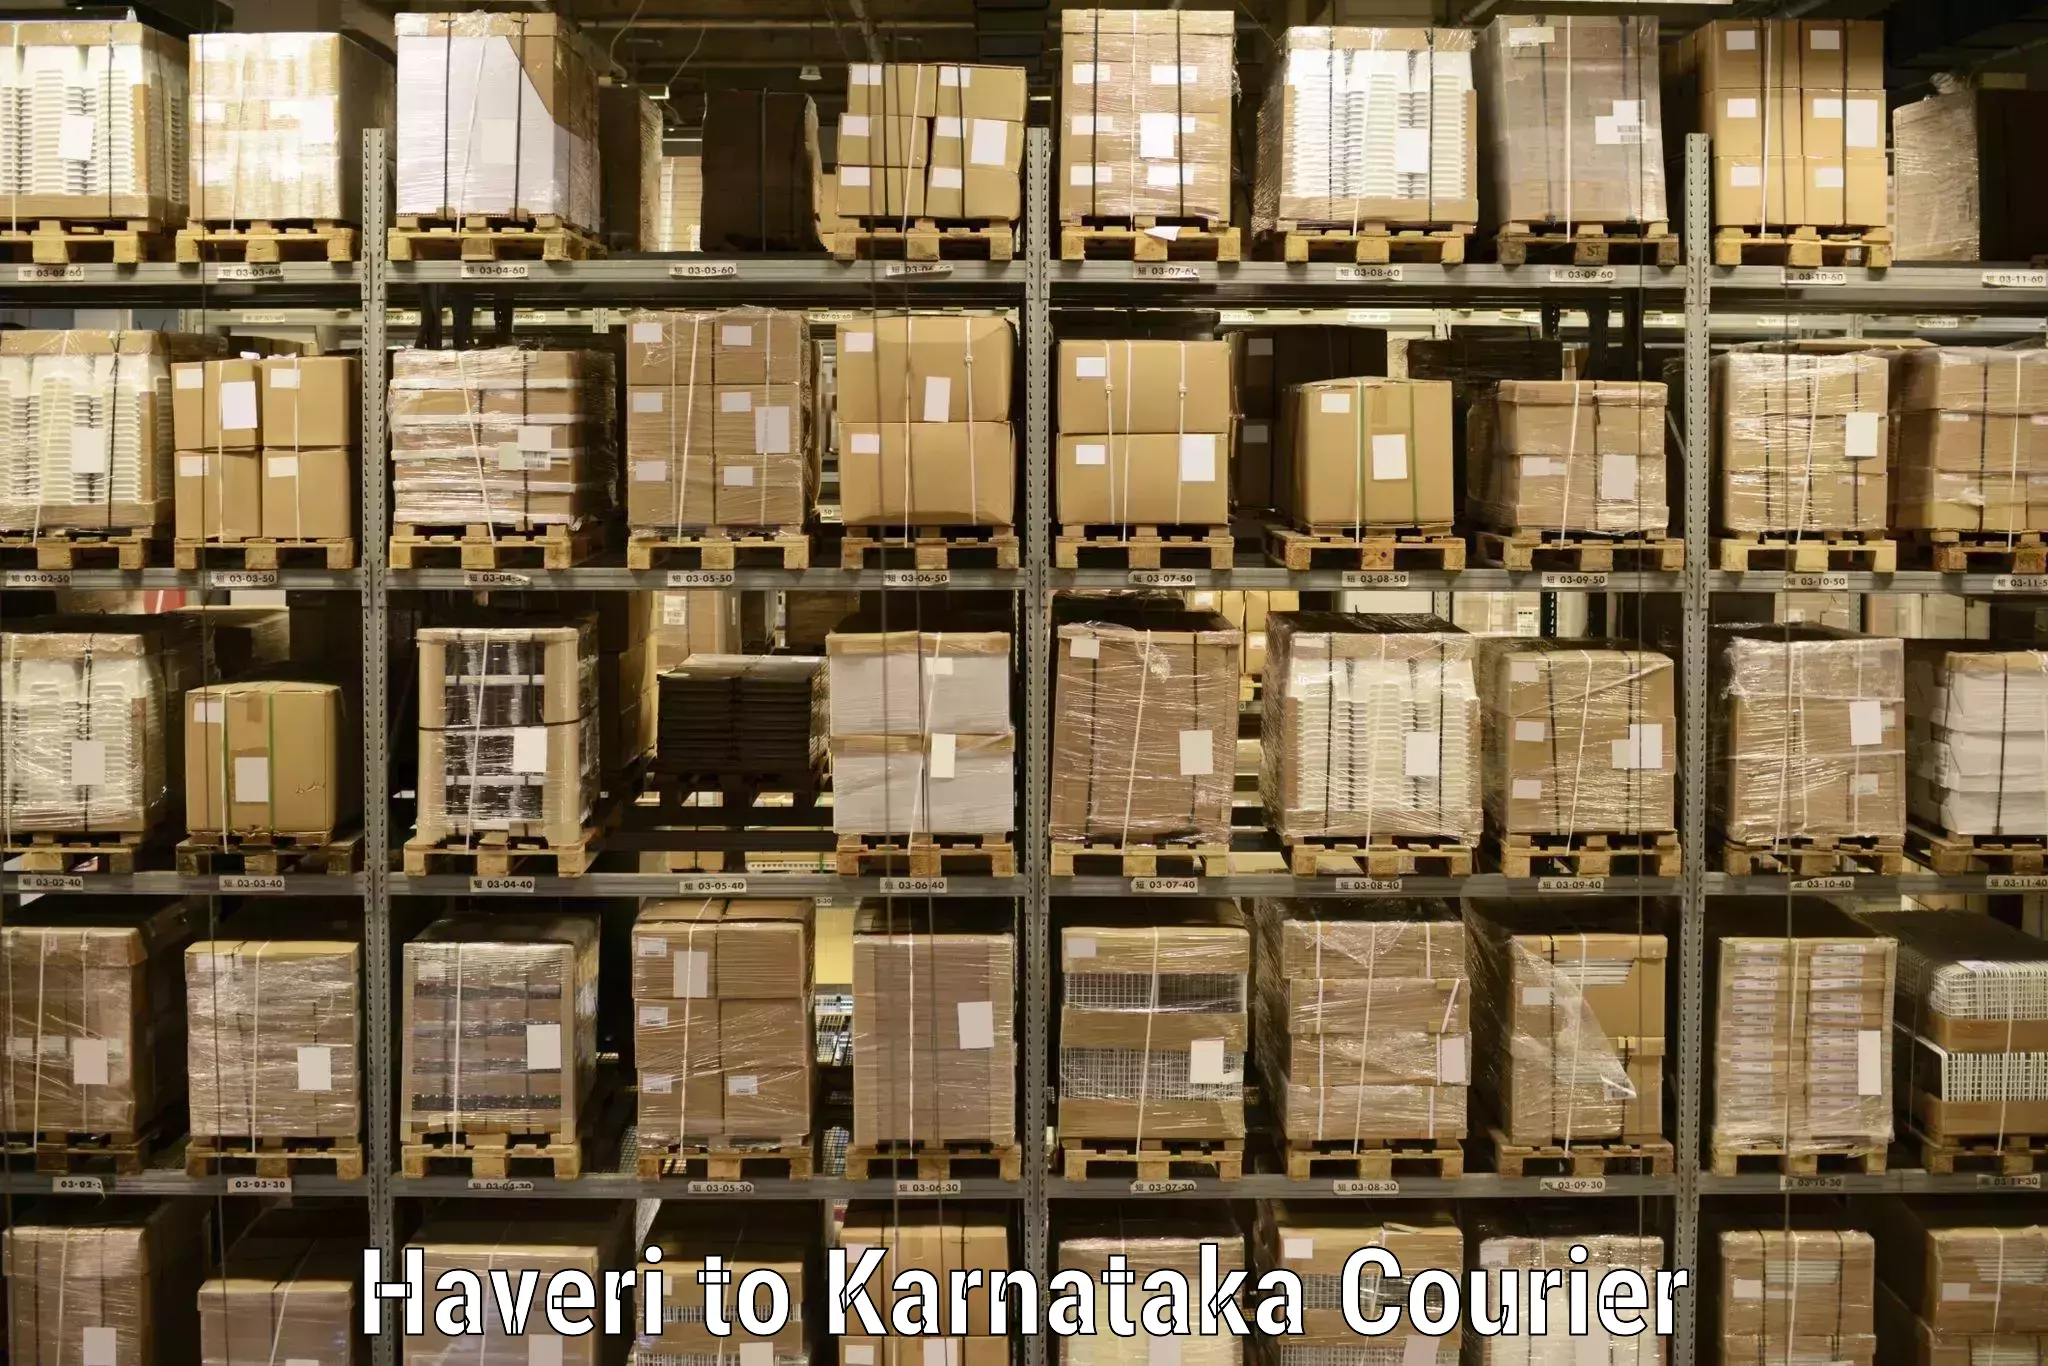 Express logistics service in Haveri to Kanjarakatte